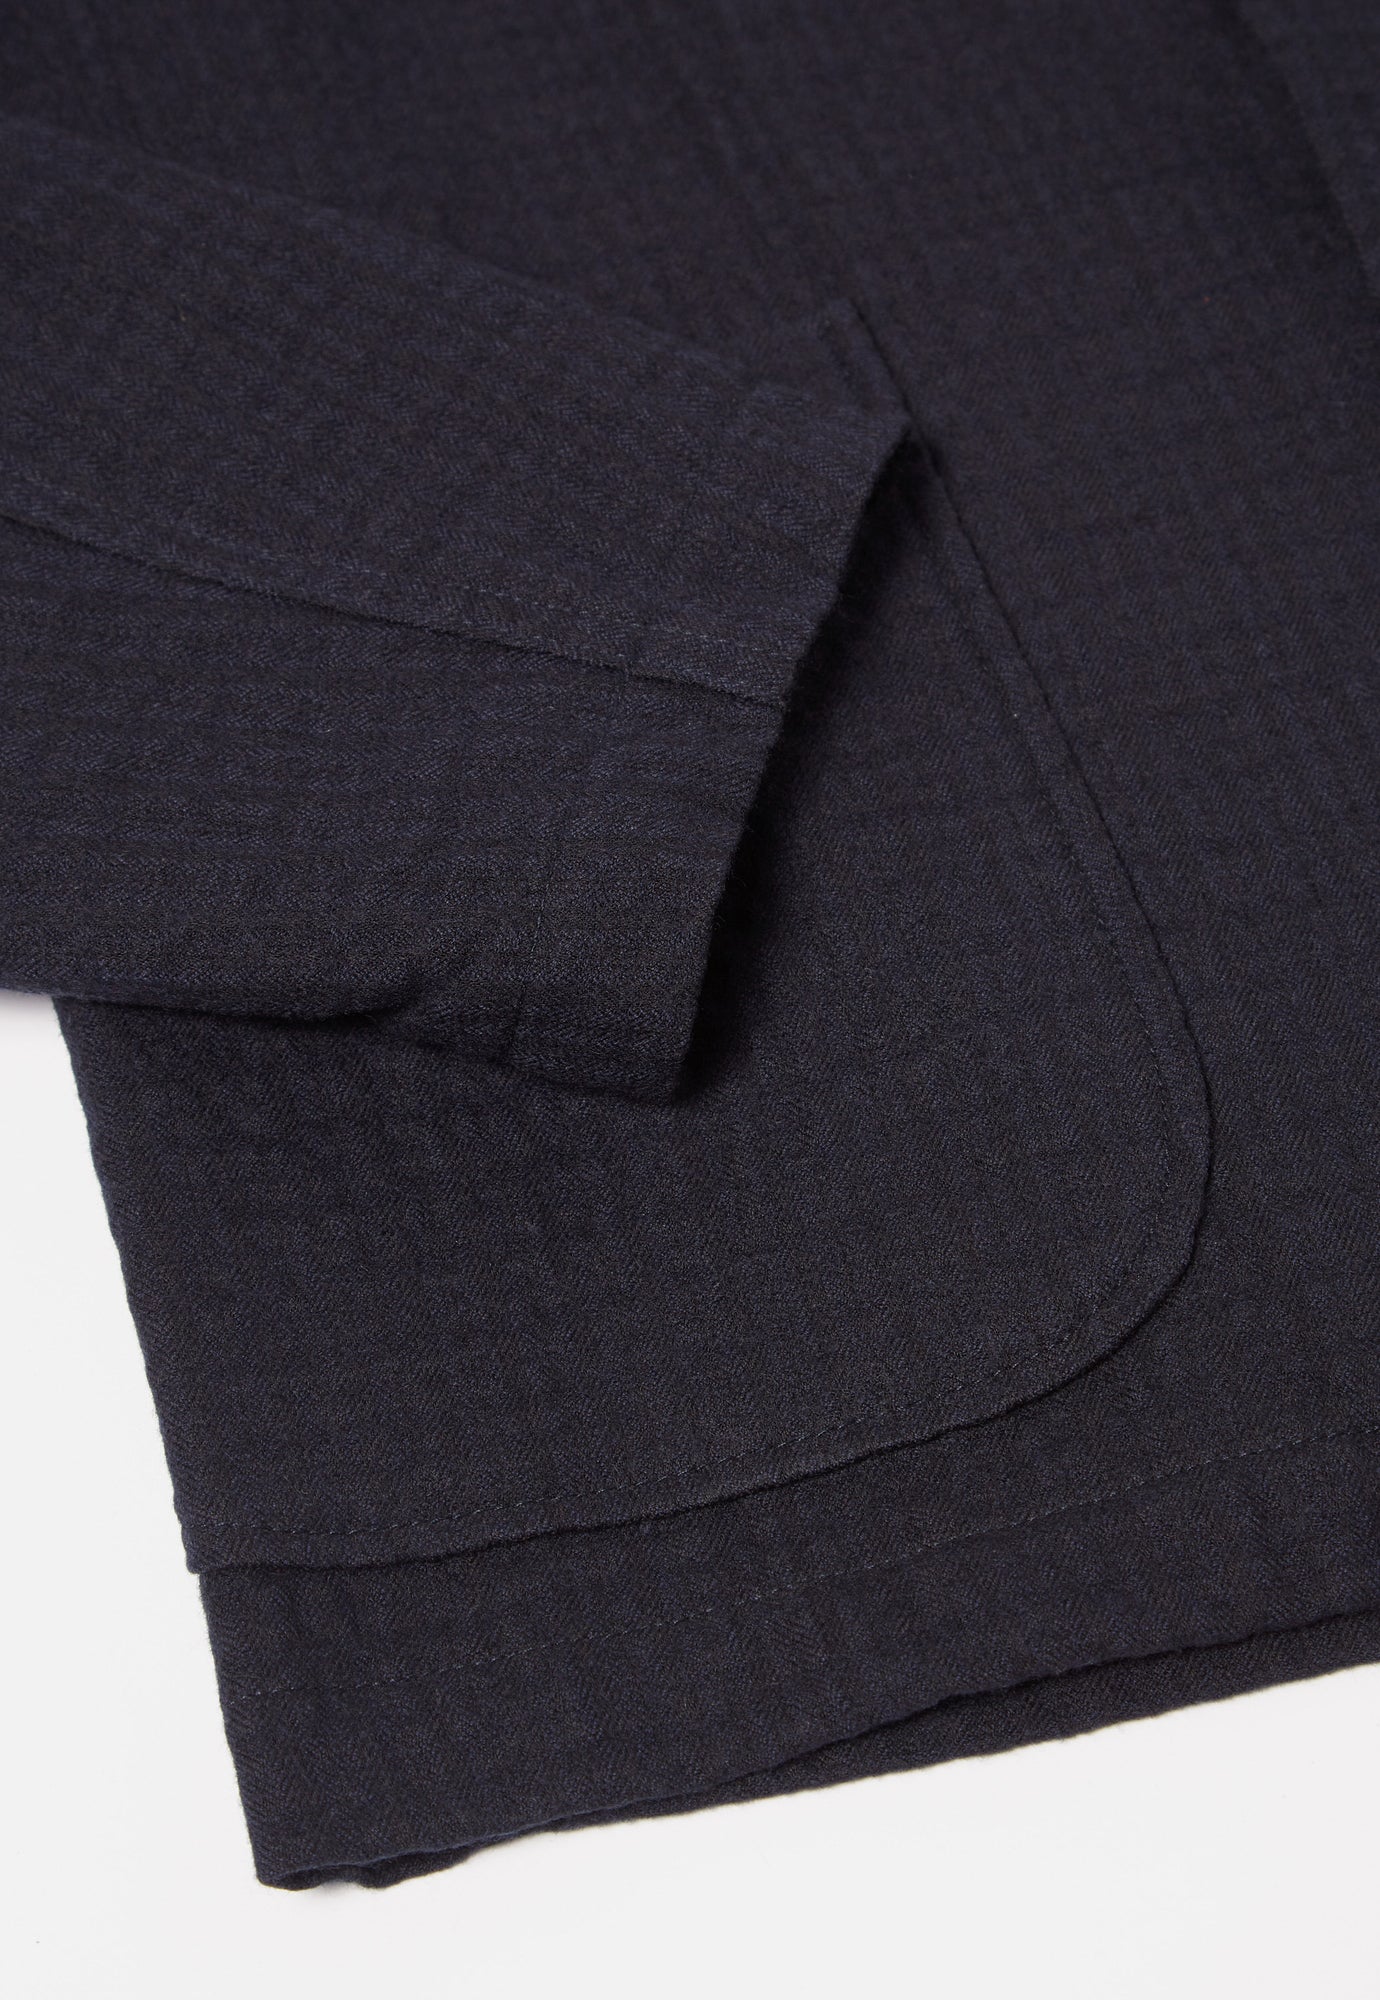 Universal Works Three Button Jacket in Navy Wool Cotton Check Seersucker